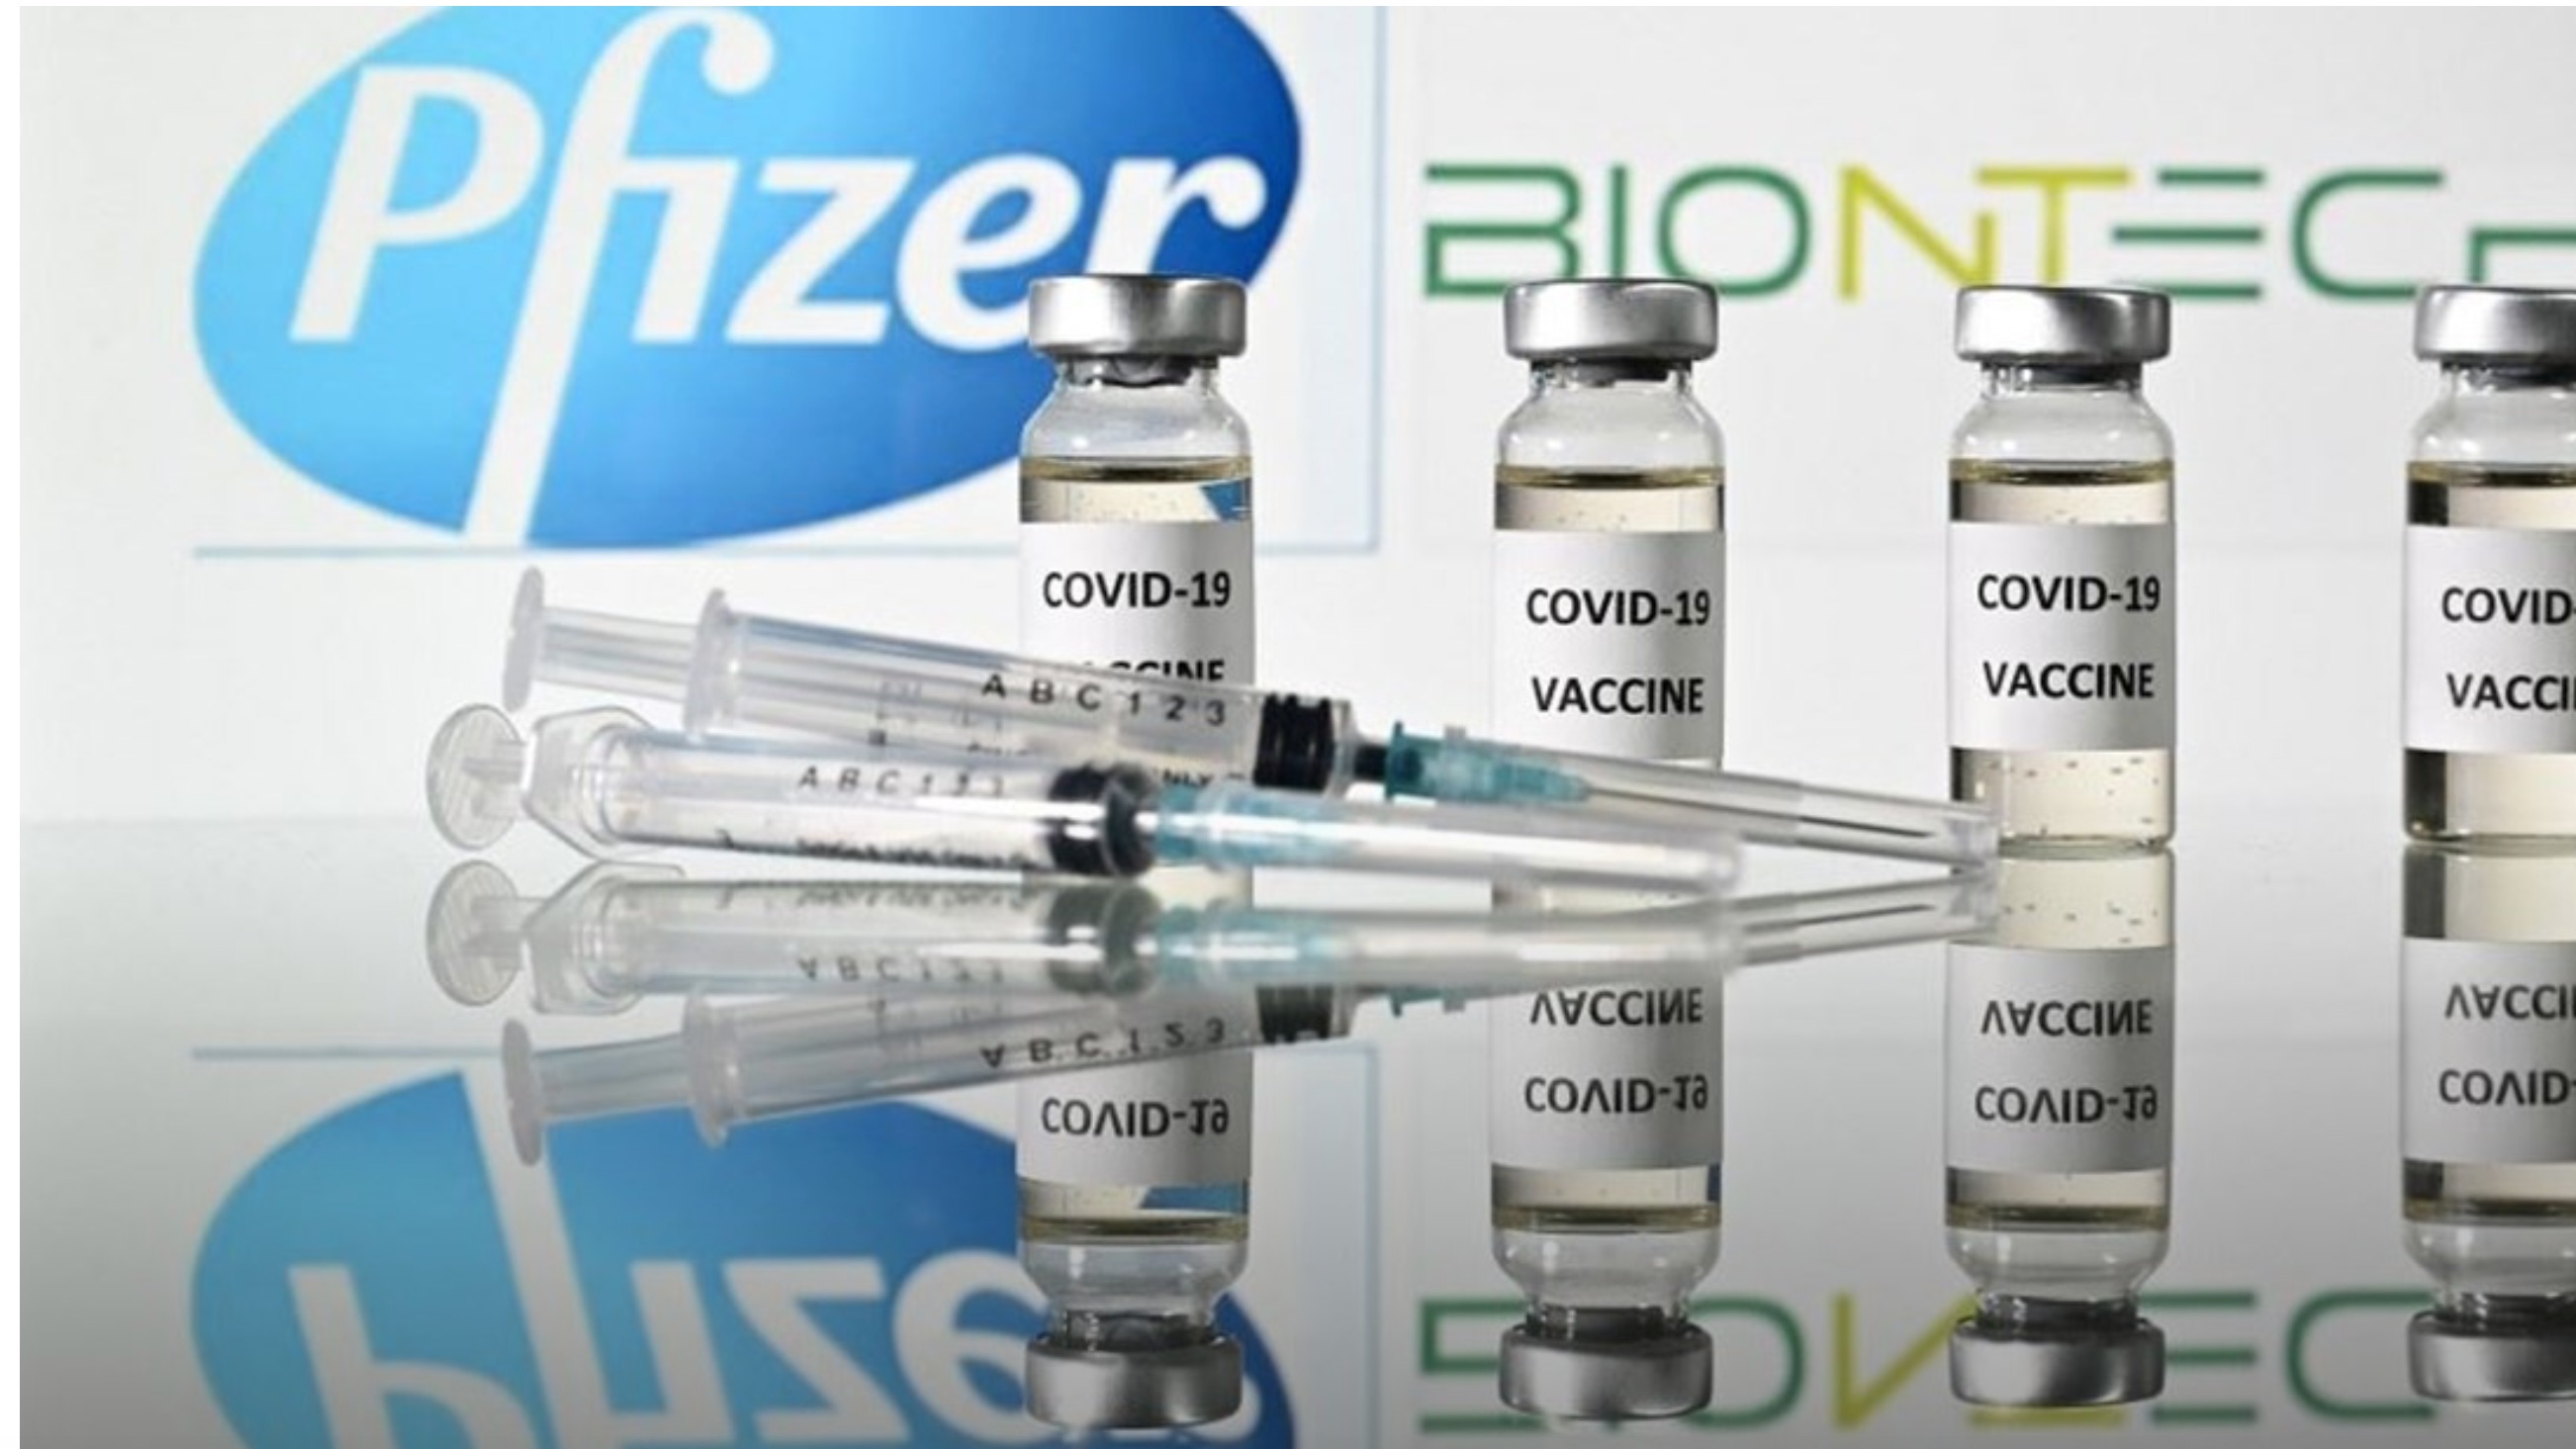 بريطانيا تدافع عن سرعتها في الترخيص للقاح ضد كورونا